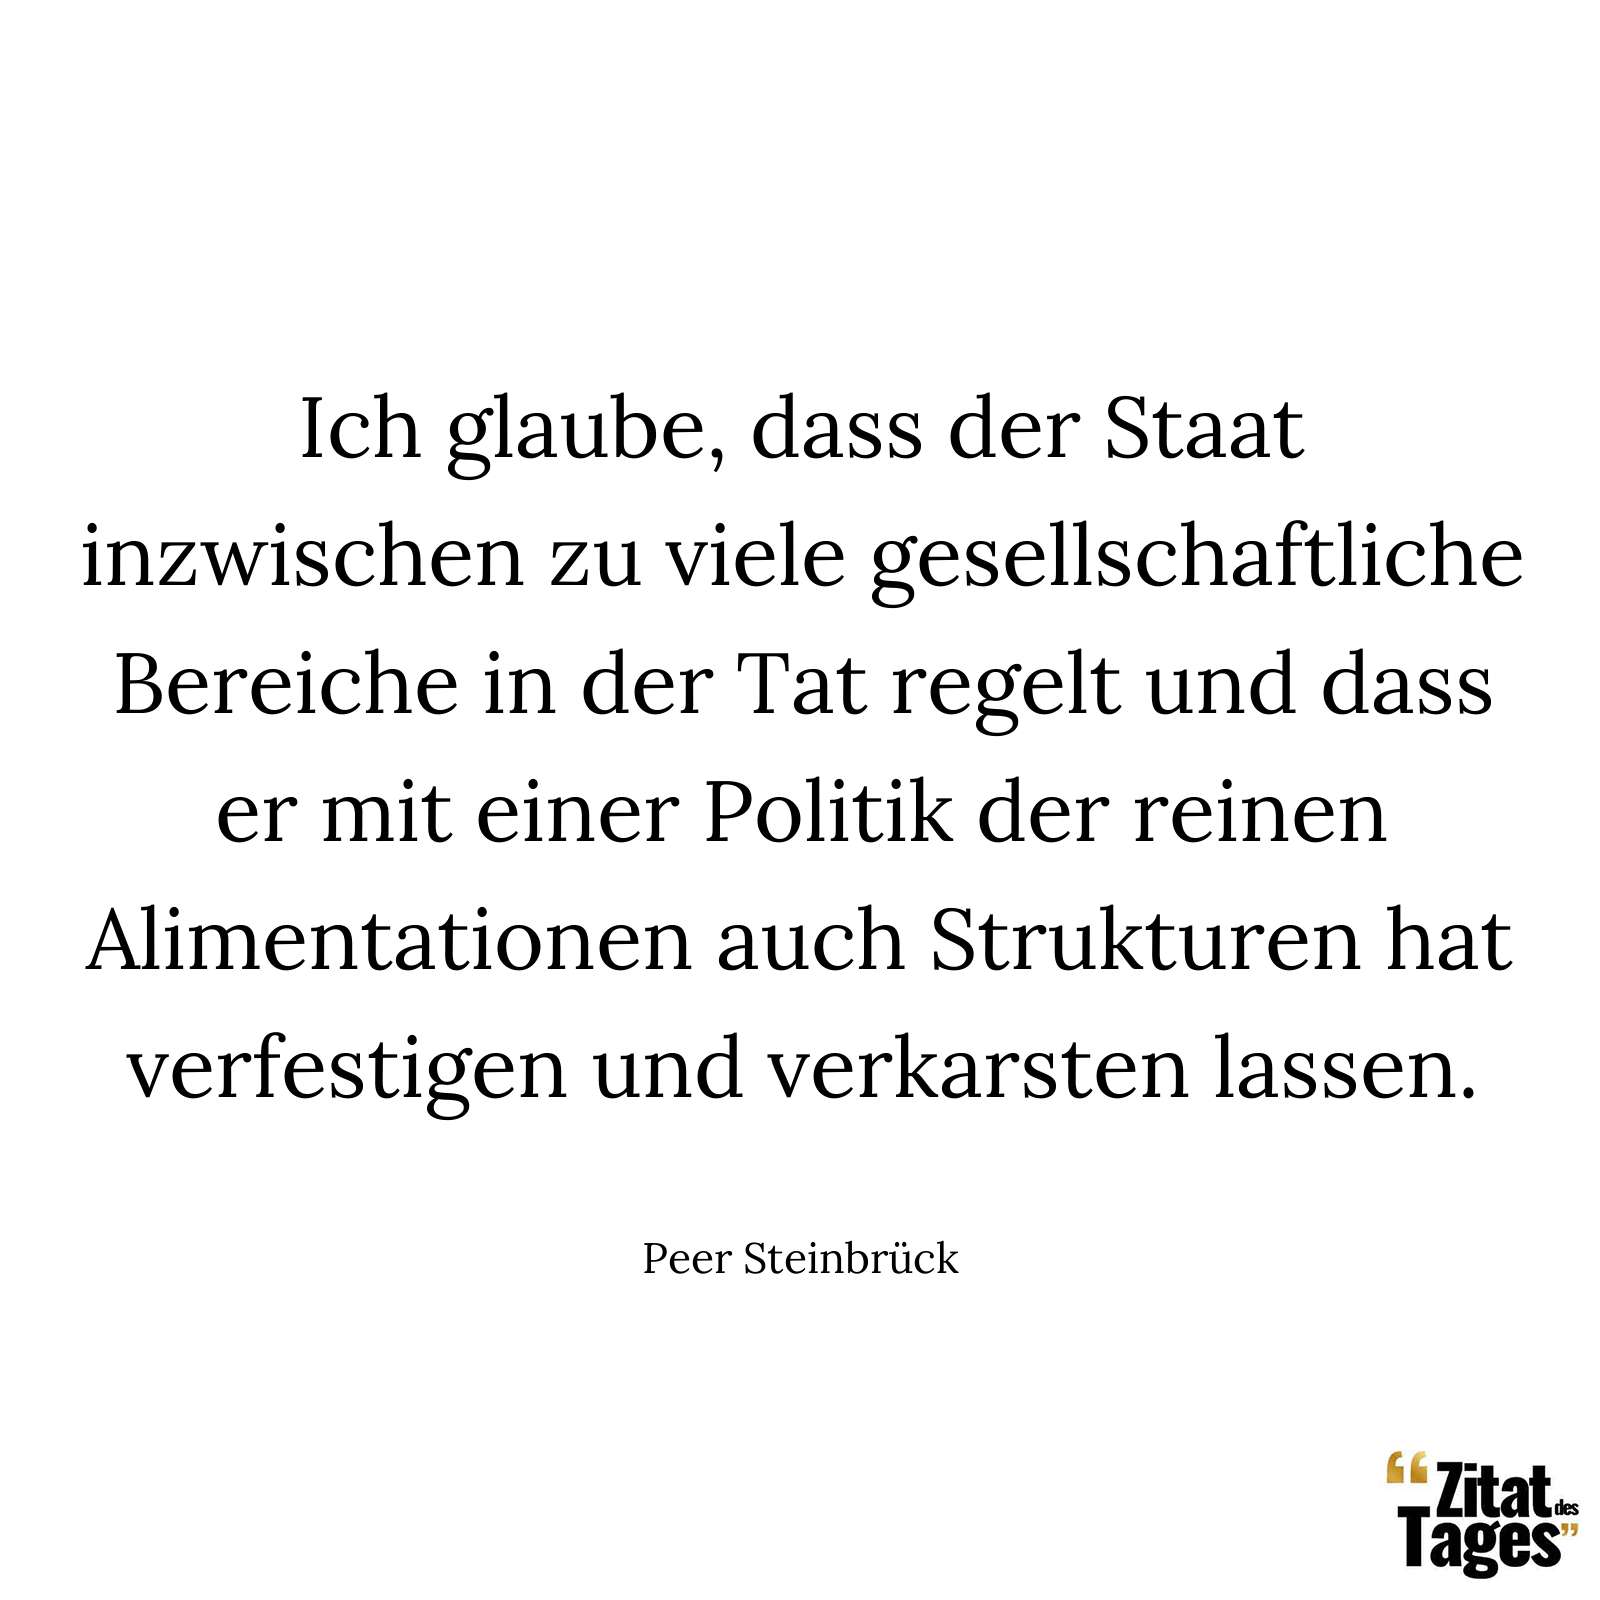 Ich glaube, dass der Staat inzwischen zu viele gesellschaftliche Bereiche in der Tat regelt und dass er mit einer Politik der reinen Alimentationen auch Strukturen hat verfestigen und verkarsten lassen. - Peer Steinbrück